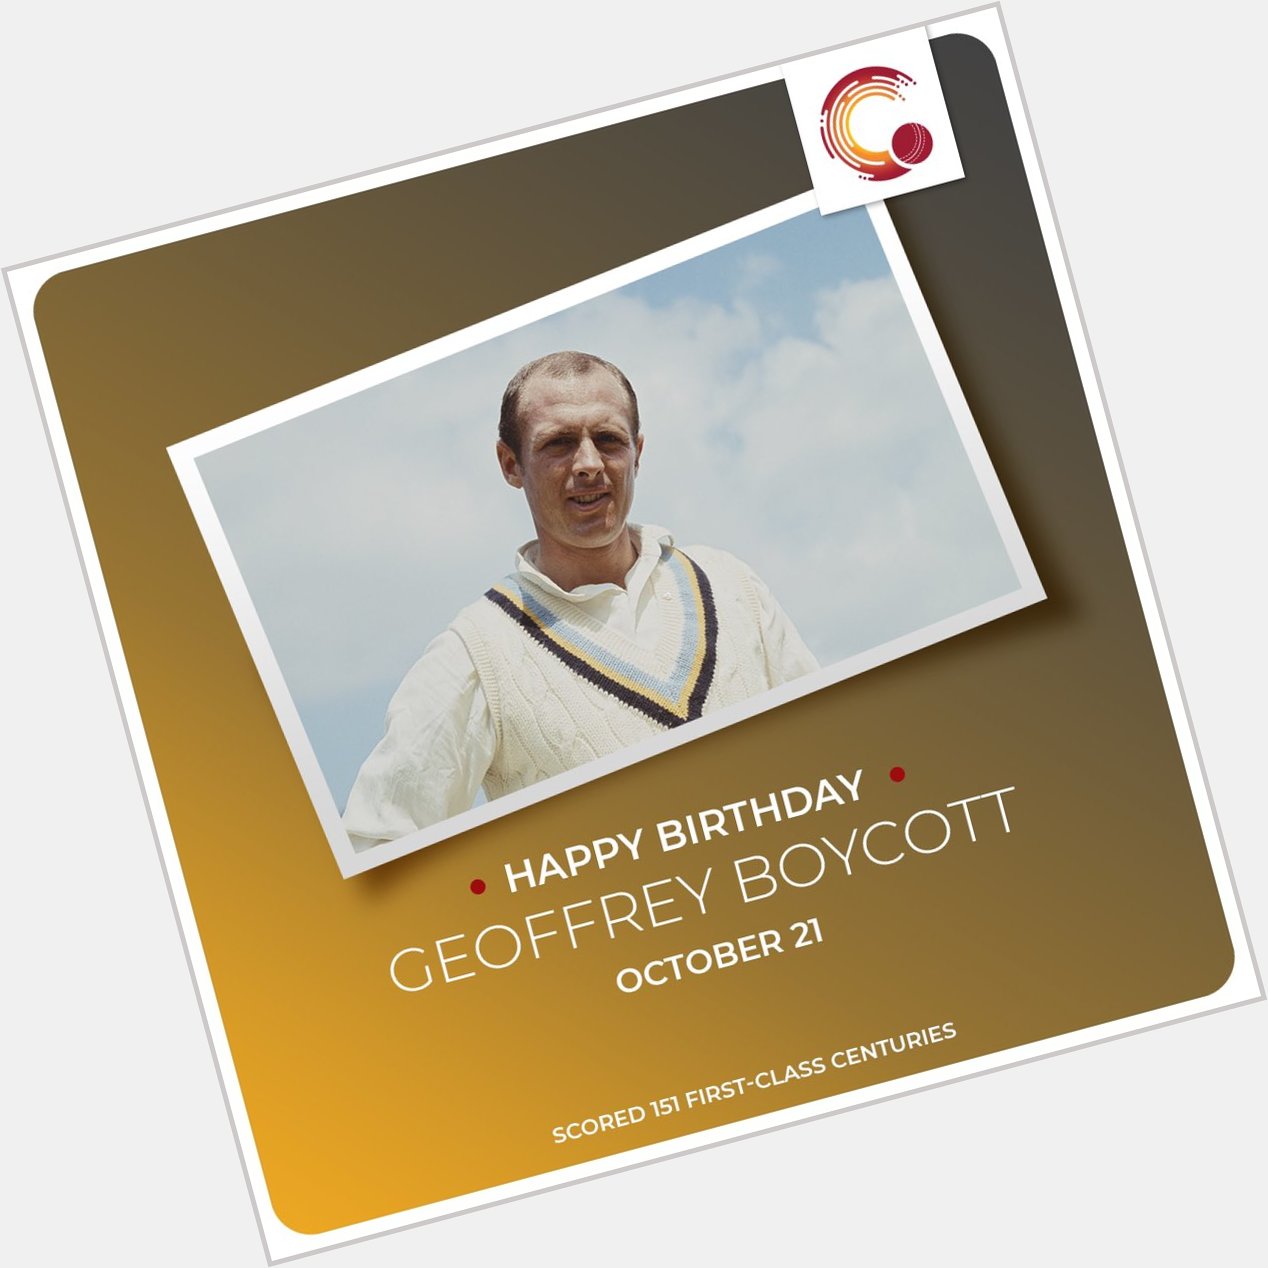 Happy Birthday to Geoffrey Boycott and Damien Martyn! 